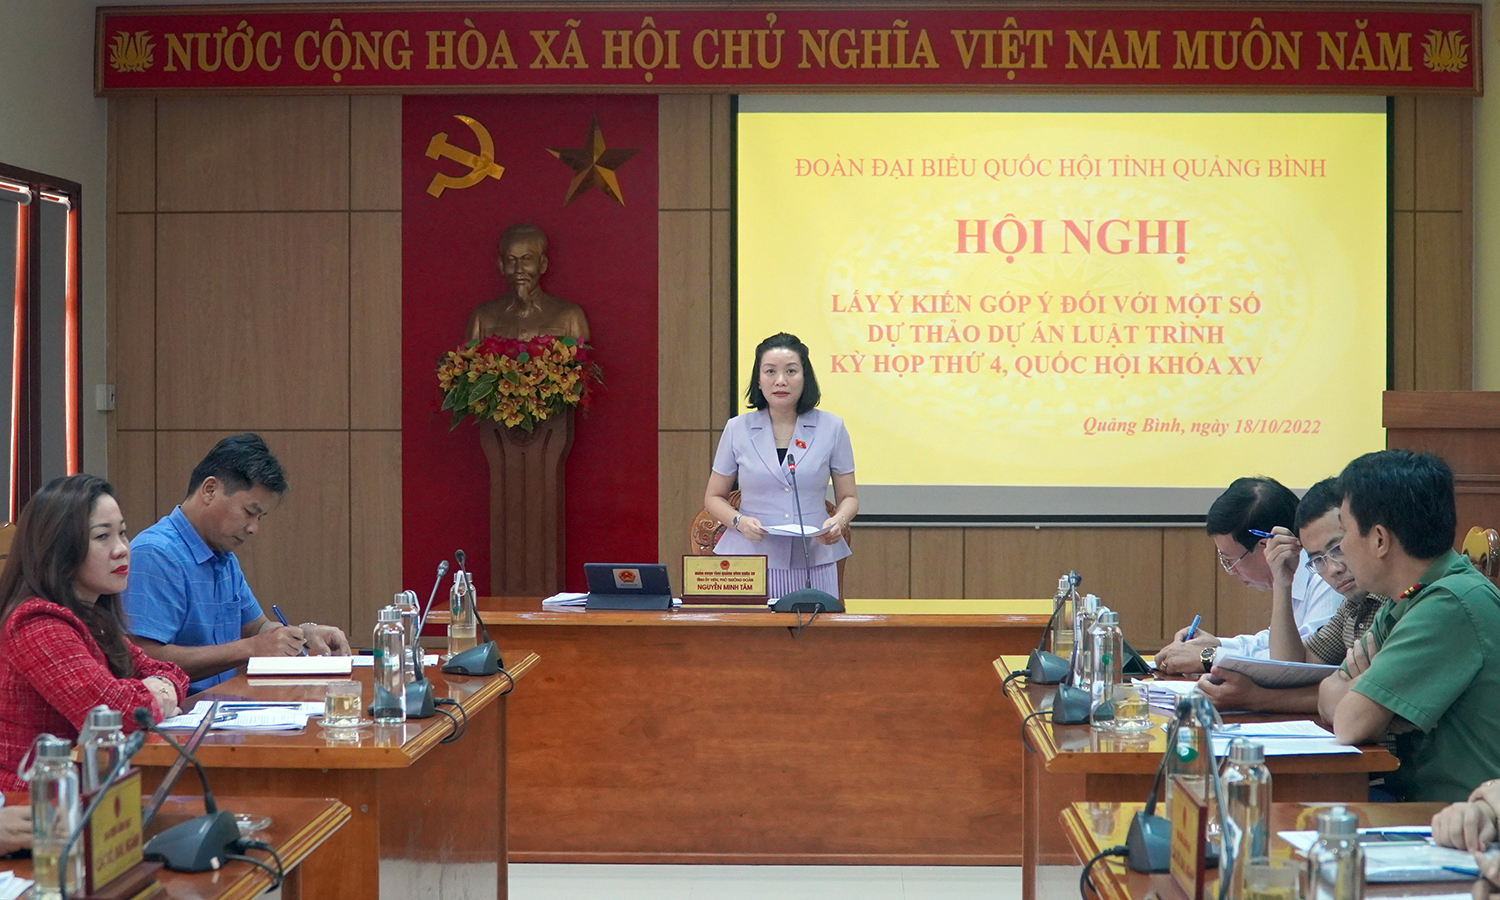 Đồng chí Nguyễn Minh Tâm, Tỉnh ủy viên, Phó trưởng đoàn chuyên trách Đoàn ĐBQH tỉnh phát biểu tại hội nghị